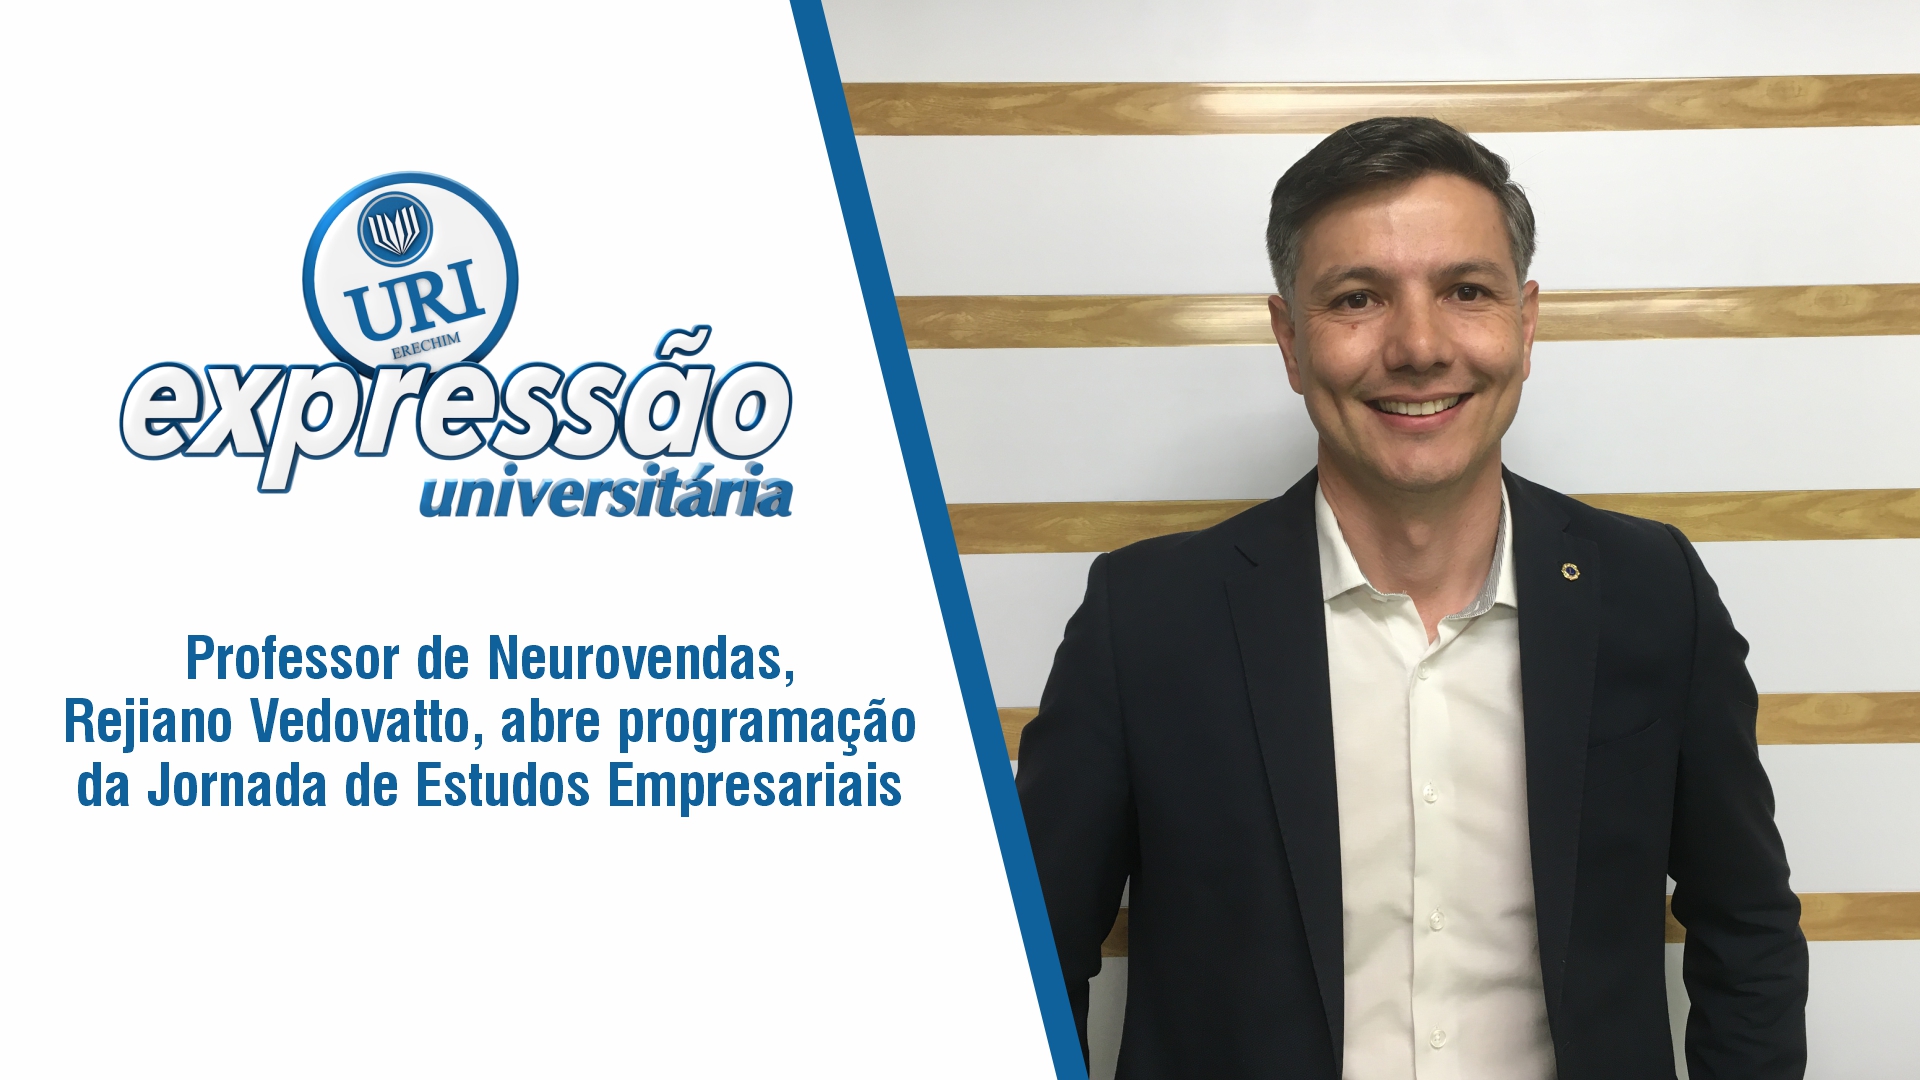 Professor de Neurovendas, Rejiano Vedovatto, abre programação da Jornada de Estudos Empresariais 